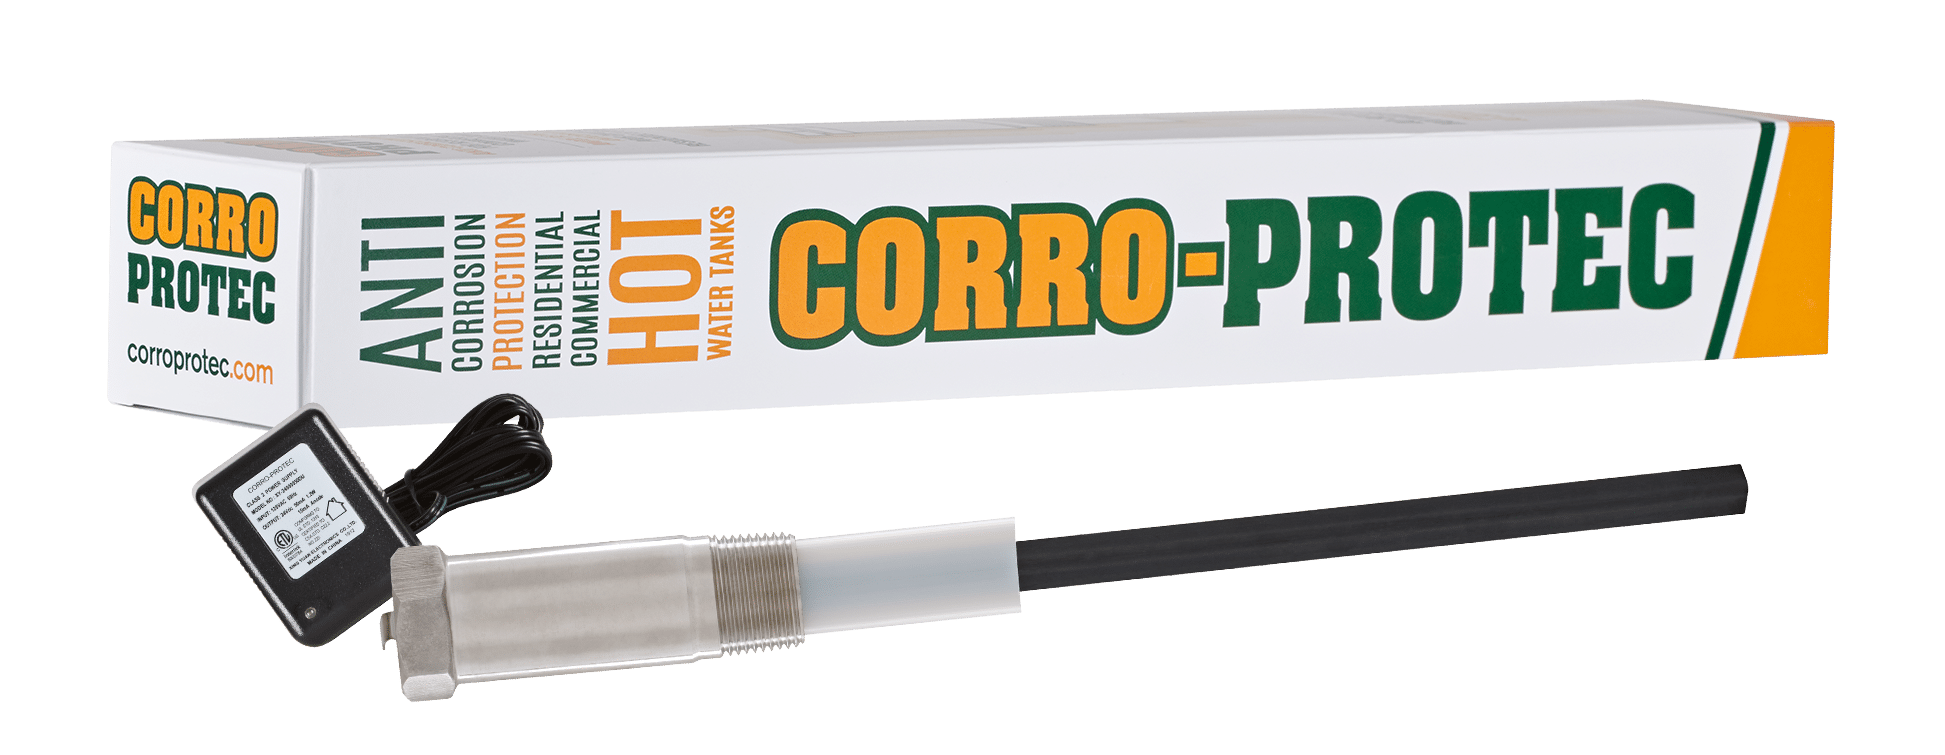 Corro-Protec Powered Varilla de ánodo